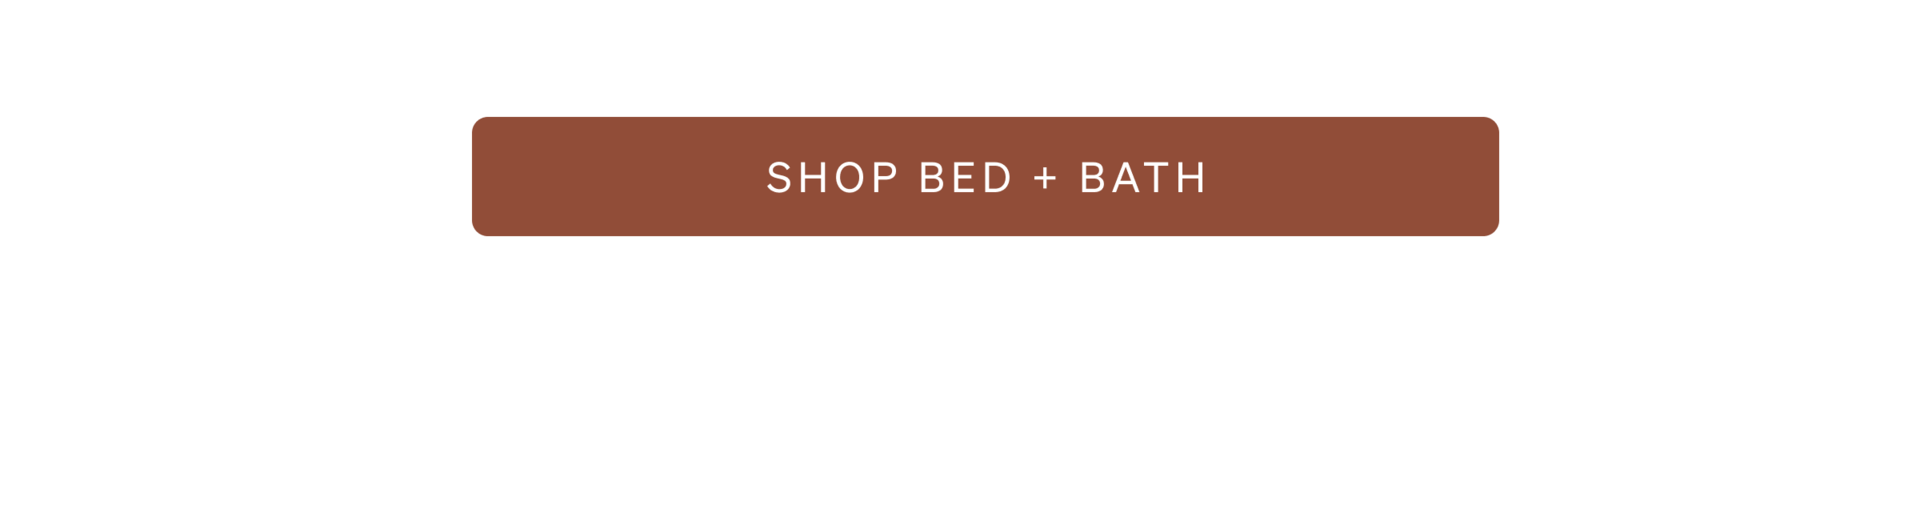 Shop Bed + Bath